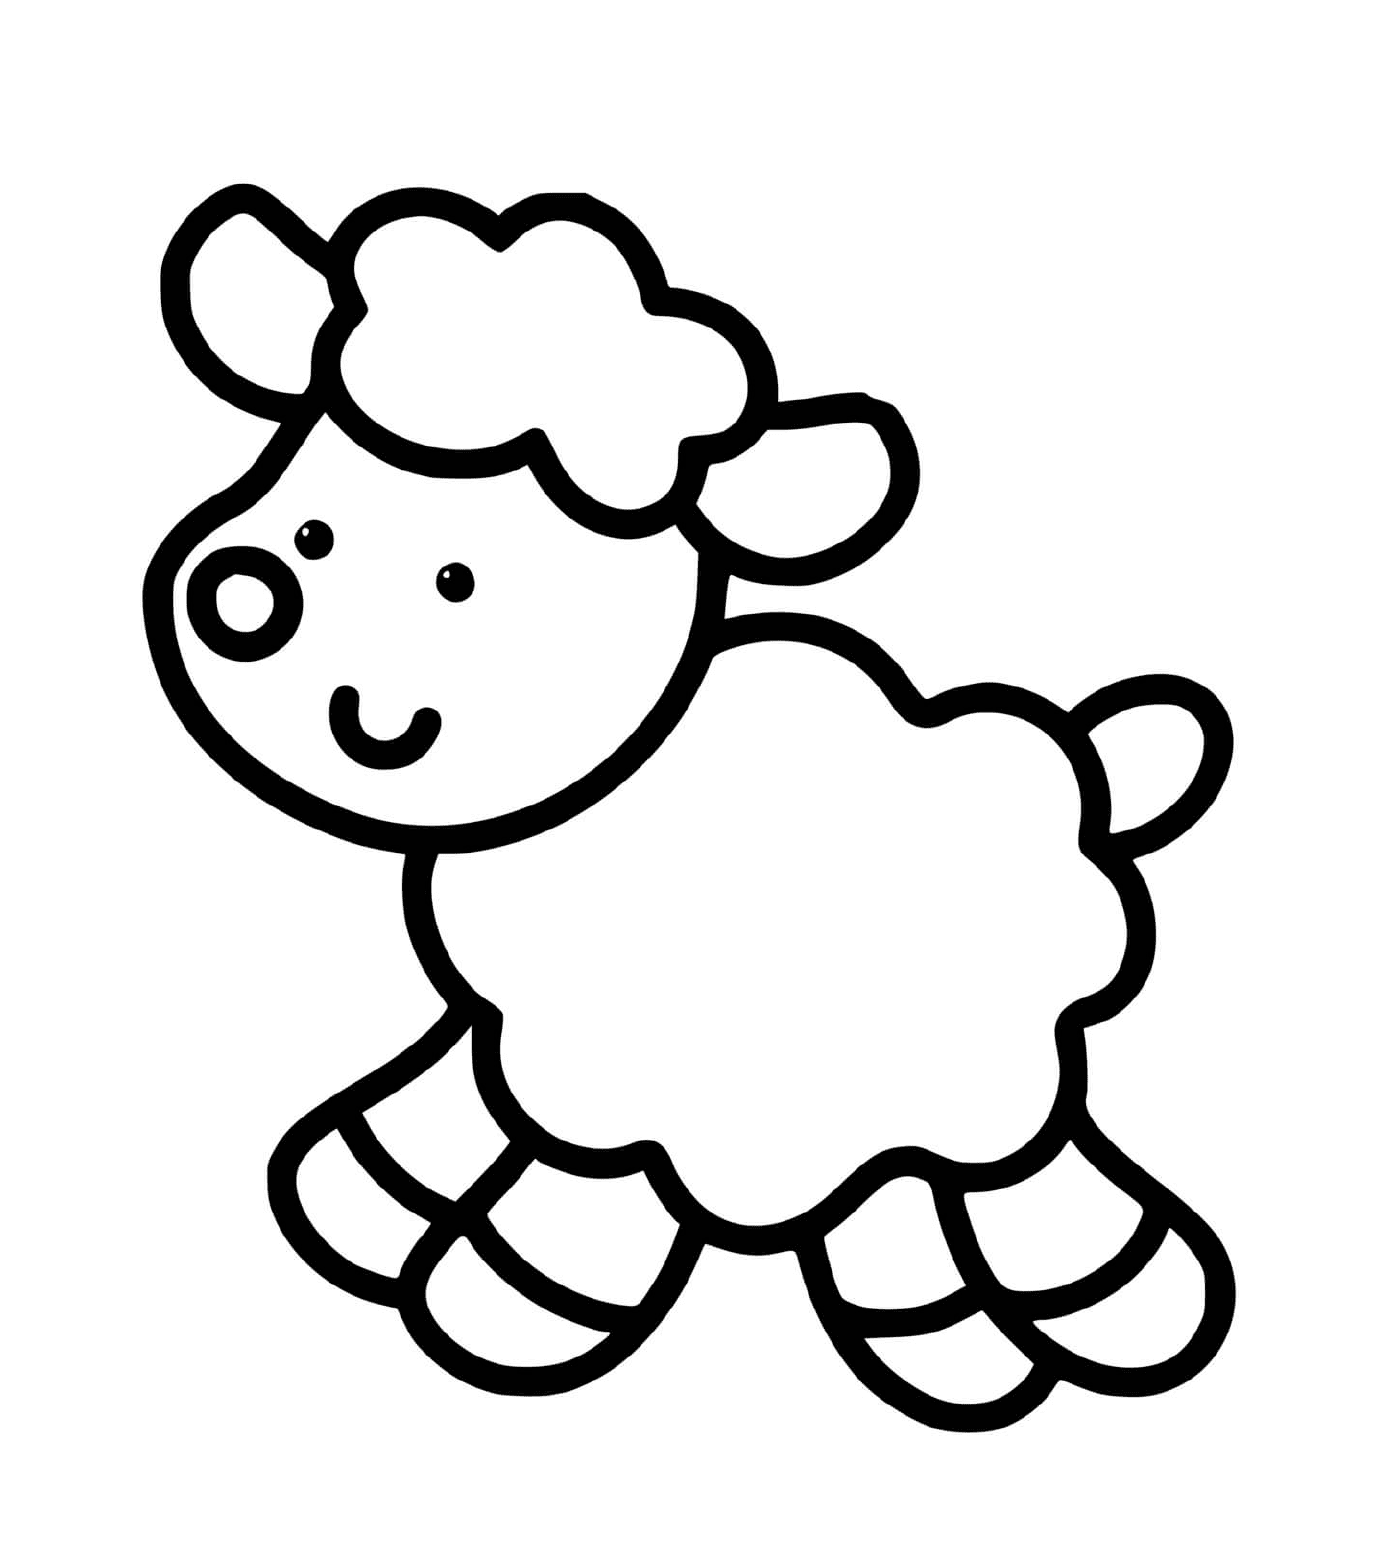  Una oveja fácil de dibujar para niños de 2 años 